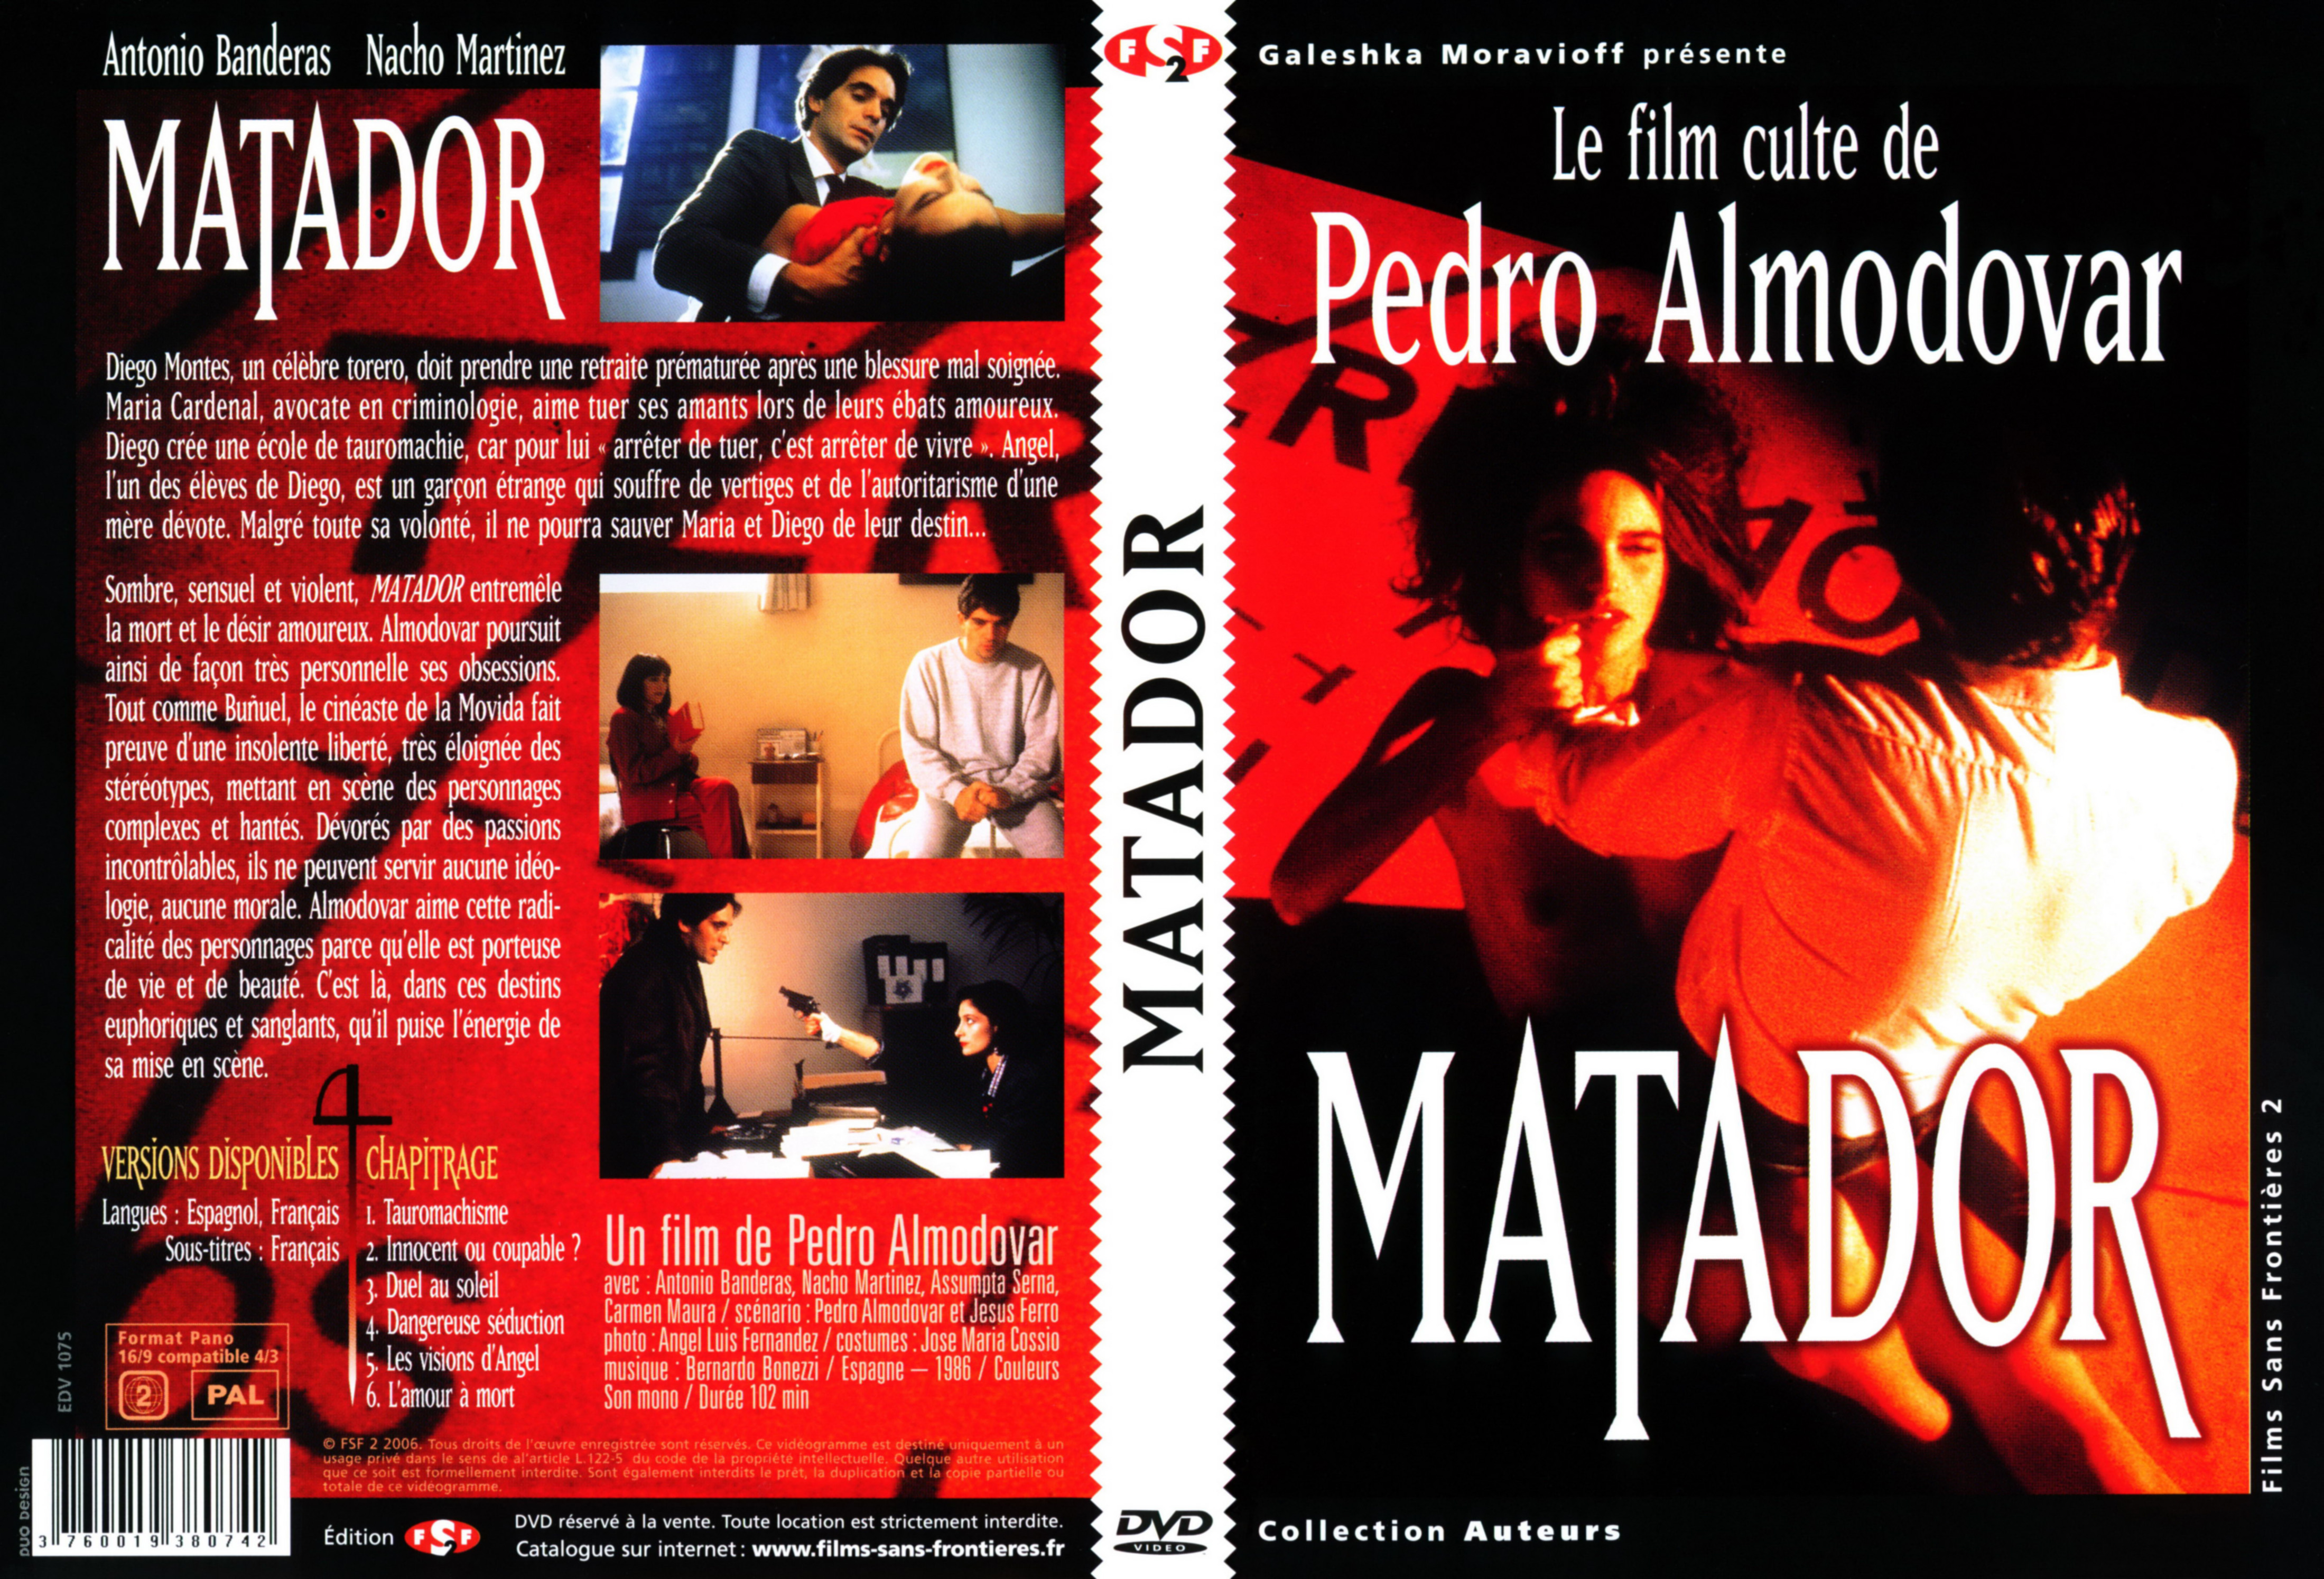 Jaquette DVD Matador v2